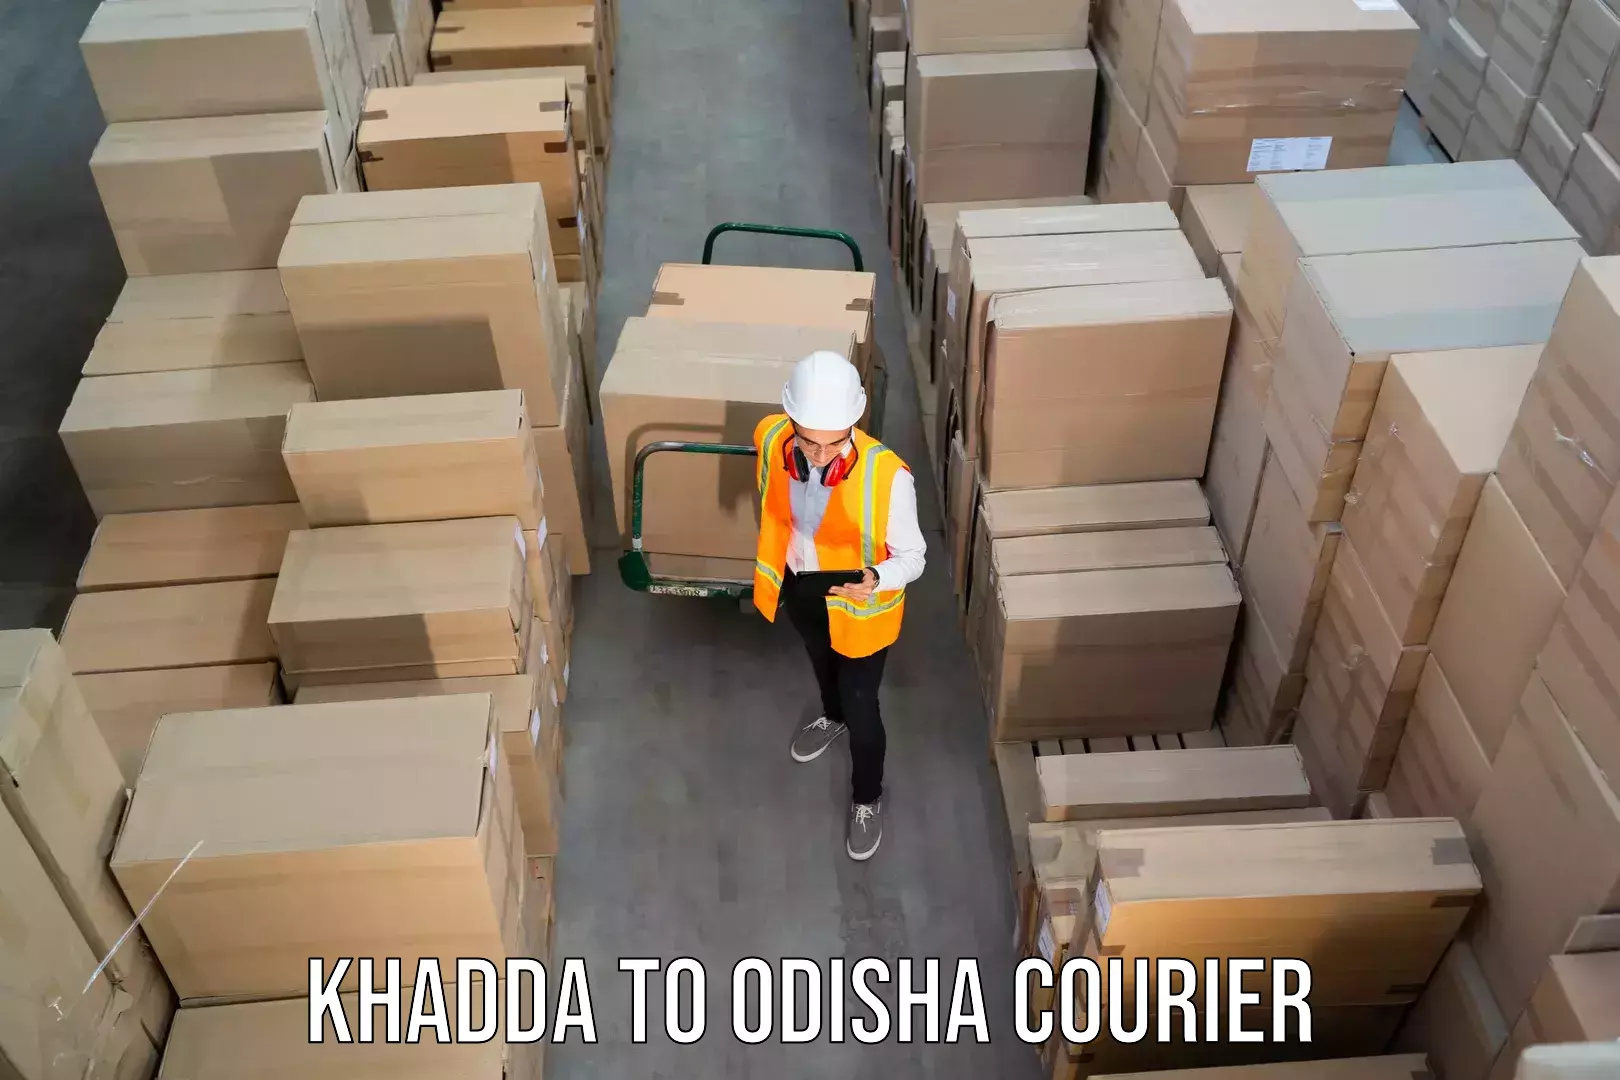 Digital courier platforms Khadda to Asika